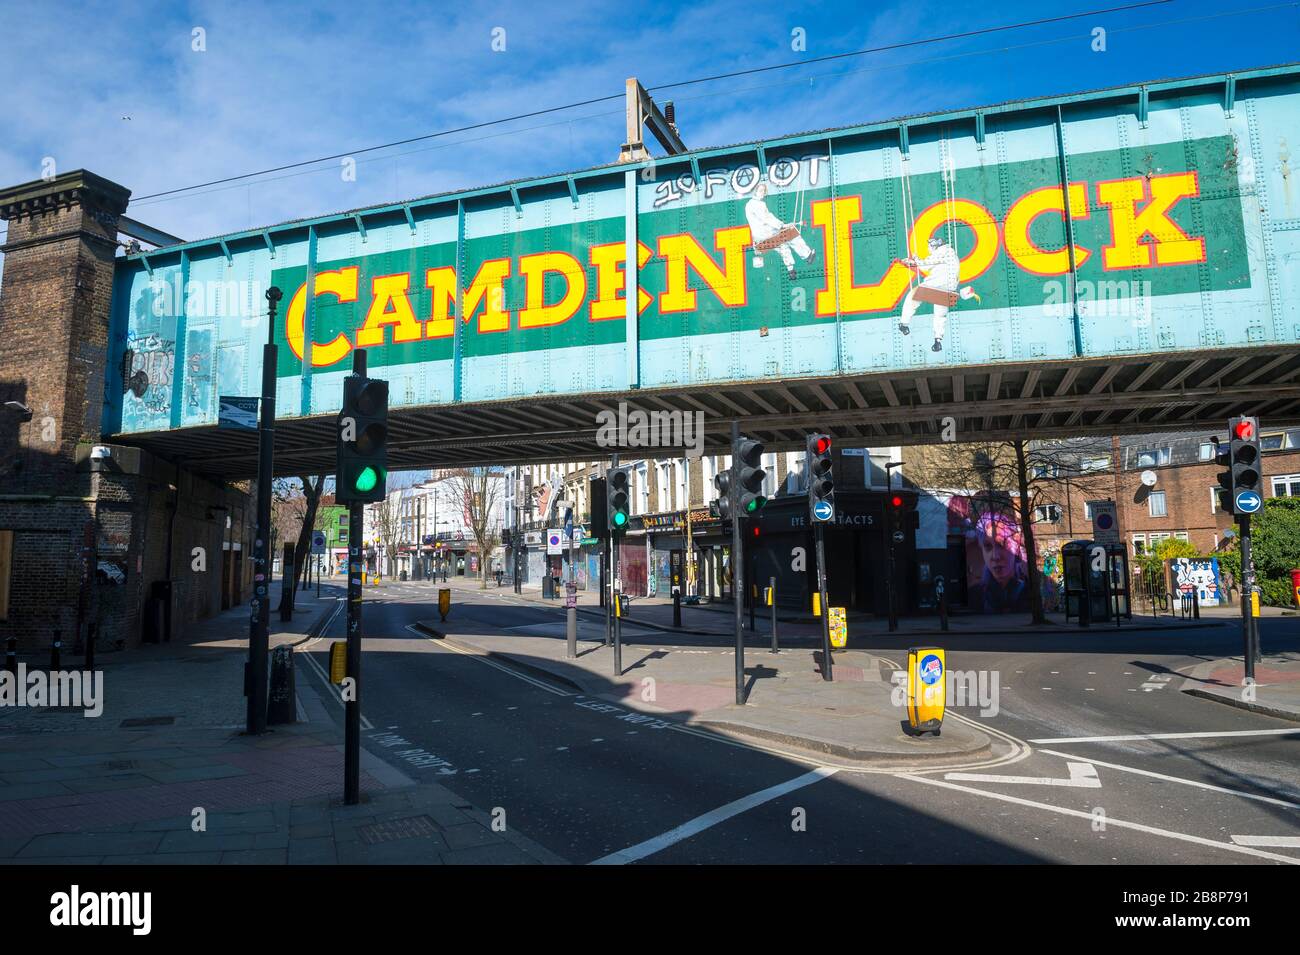 LONDRES - 22 MARS 2020 : les rues habituellement animées autour du célèbre marché de Camden sont maintenant désertées alors que la ville souffre de verrouillage de Coronavirus. Banque D'Images